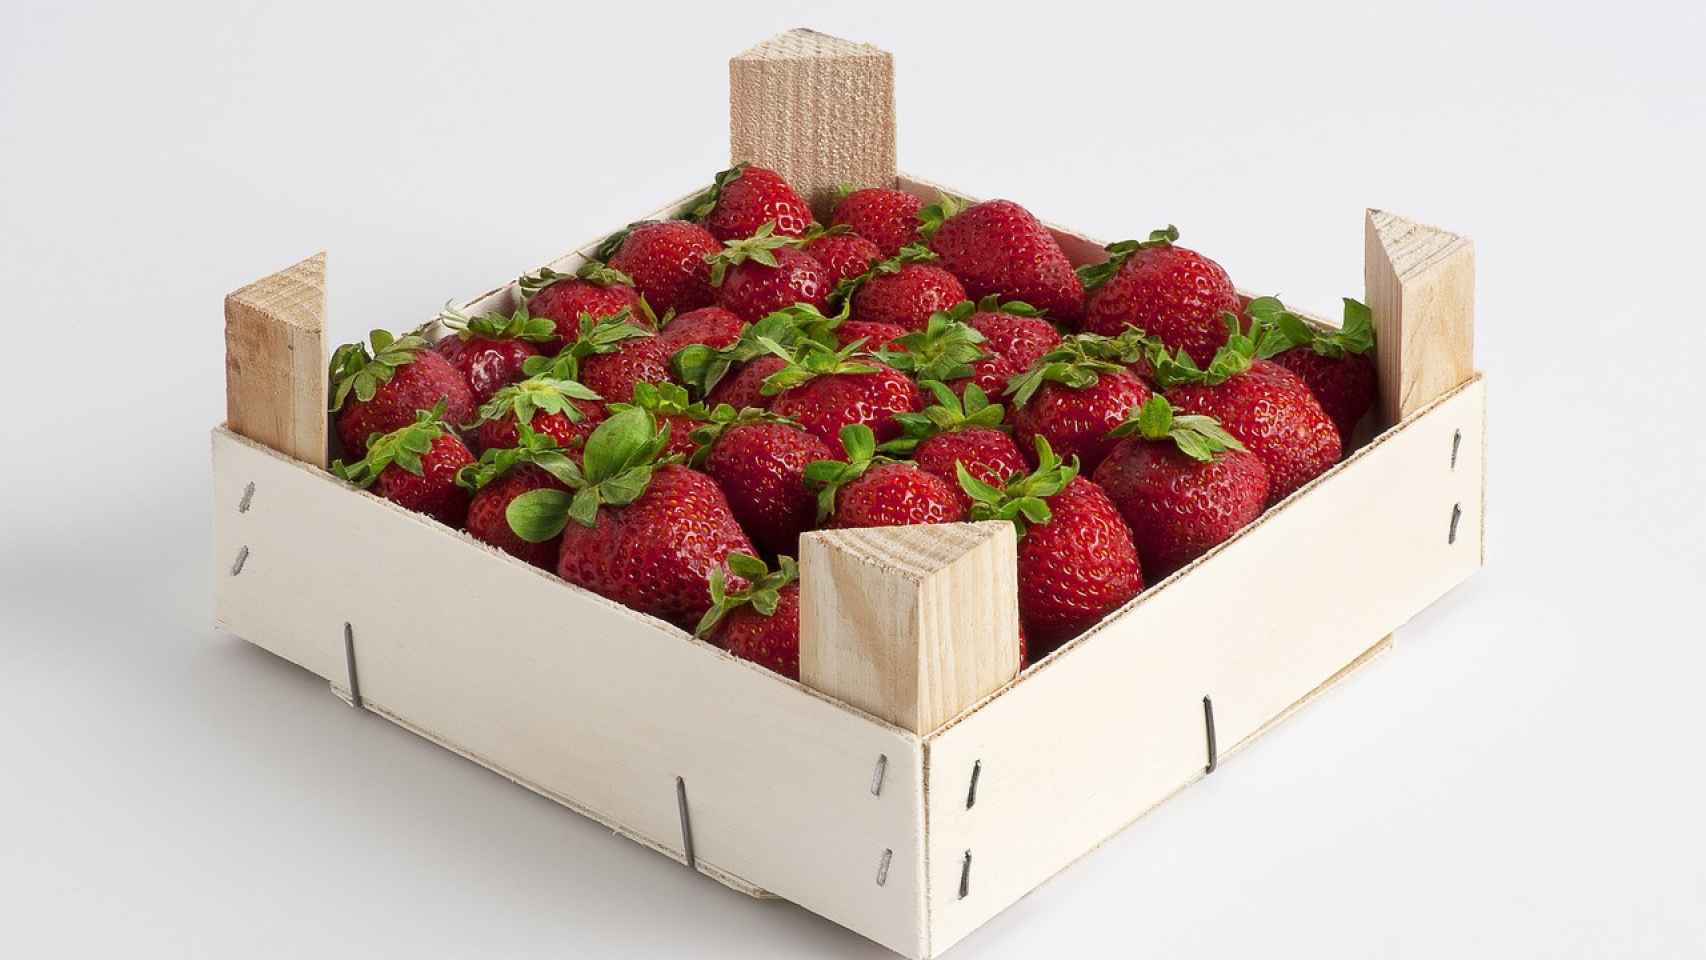 9 ideas para reutilizar las cajas de fresas y pasar un rato entretenido